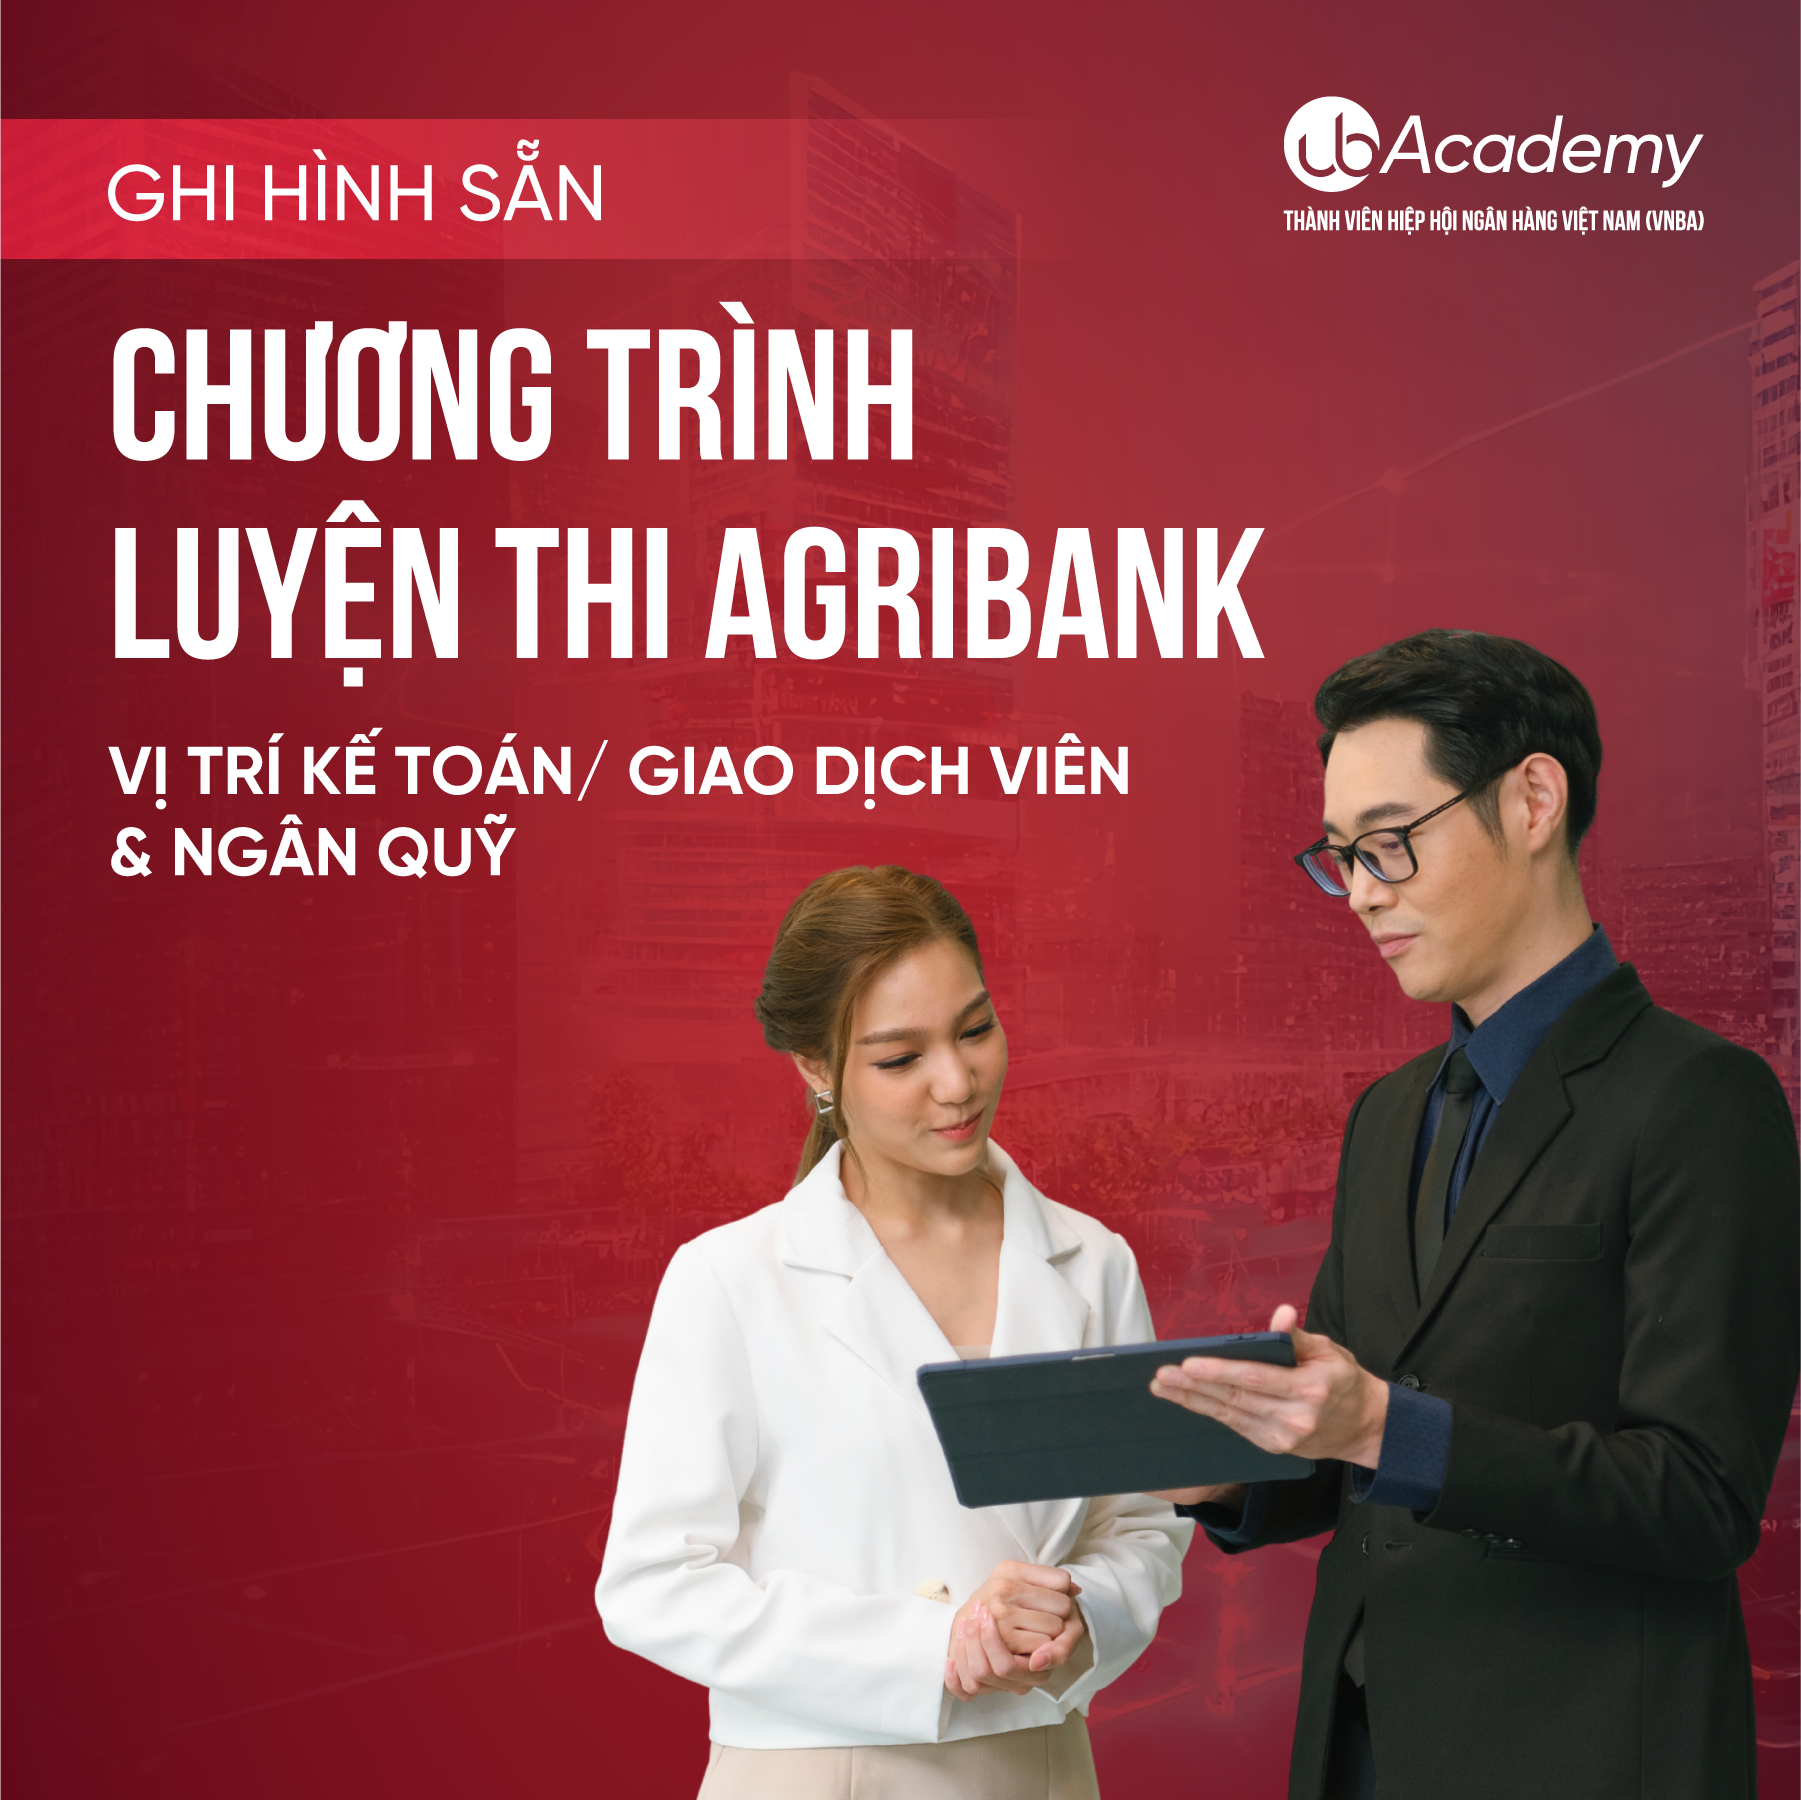 Chương trình luyện thi Agribank - Vị trí Kế toán/ Giao dịch viên & Ngân quỹ - Ghi hình sẵn